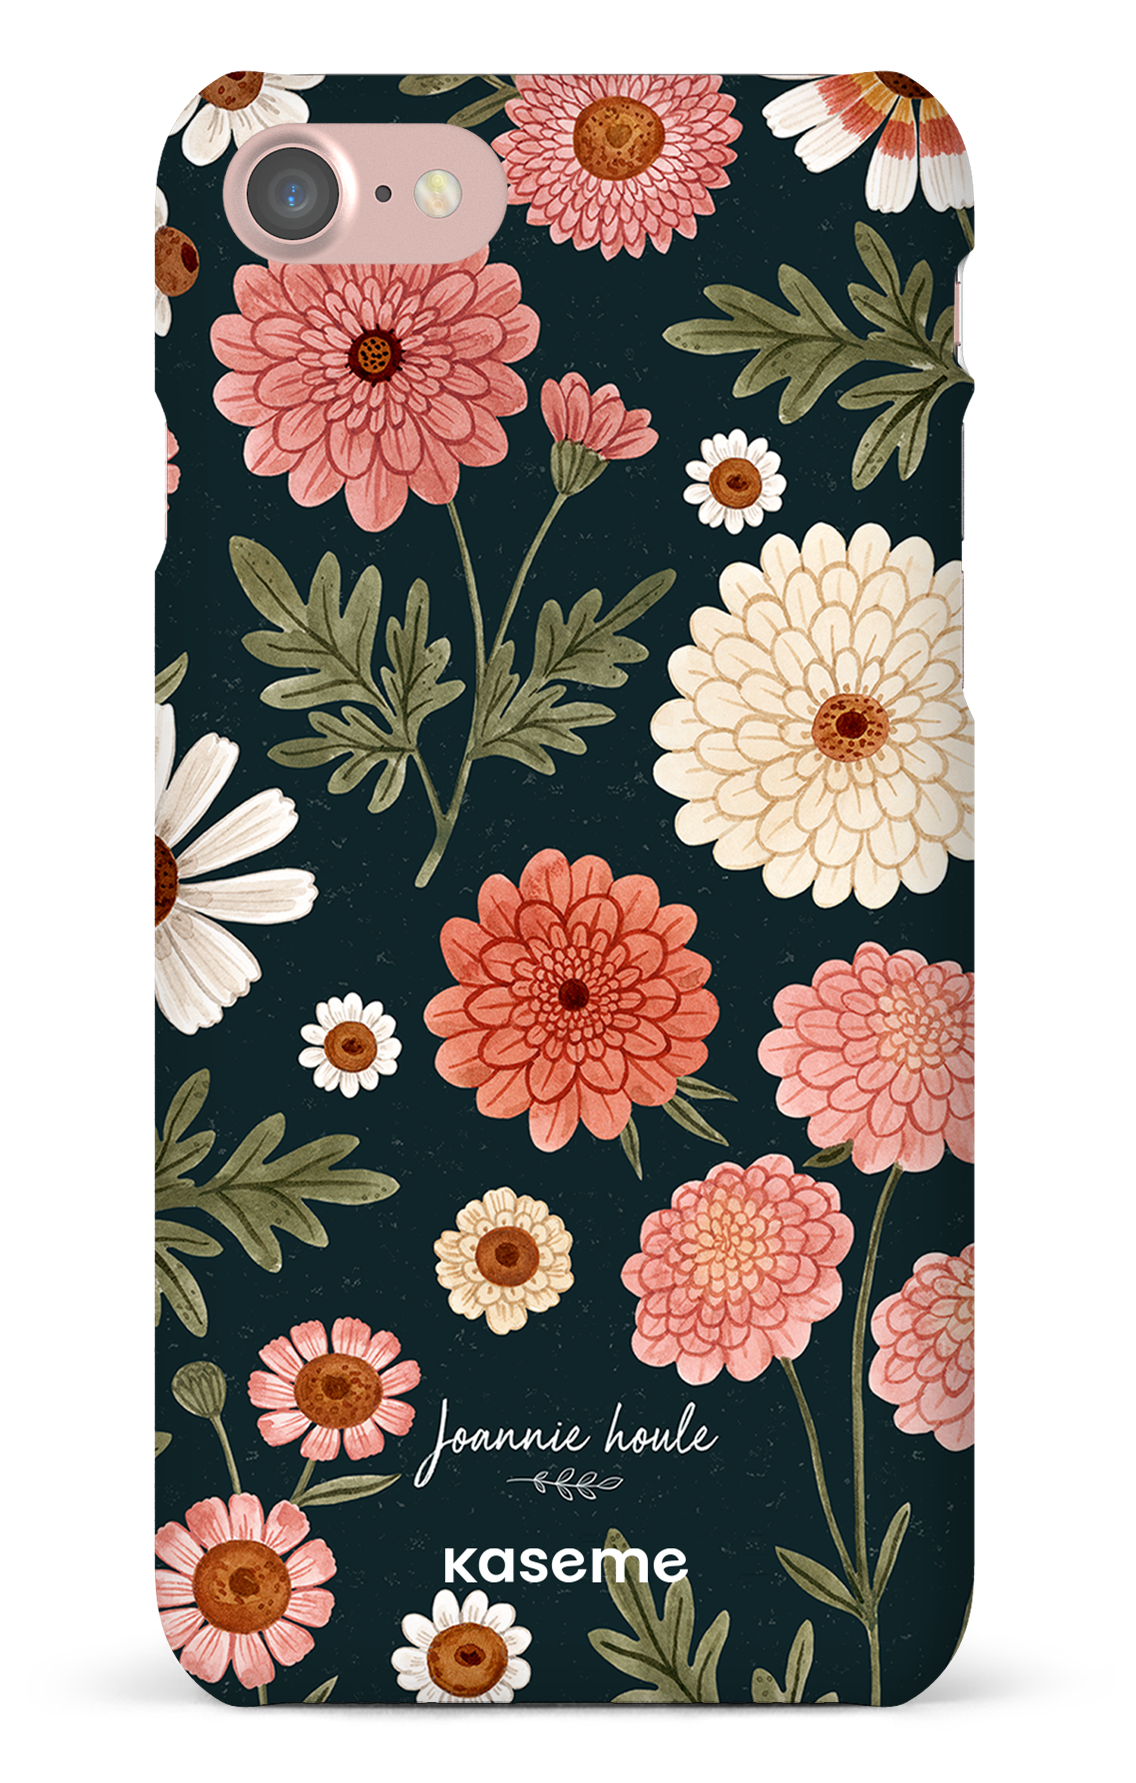 Chrysanthemums by Joannie Houle - iPhone 7